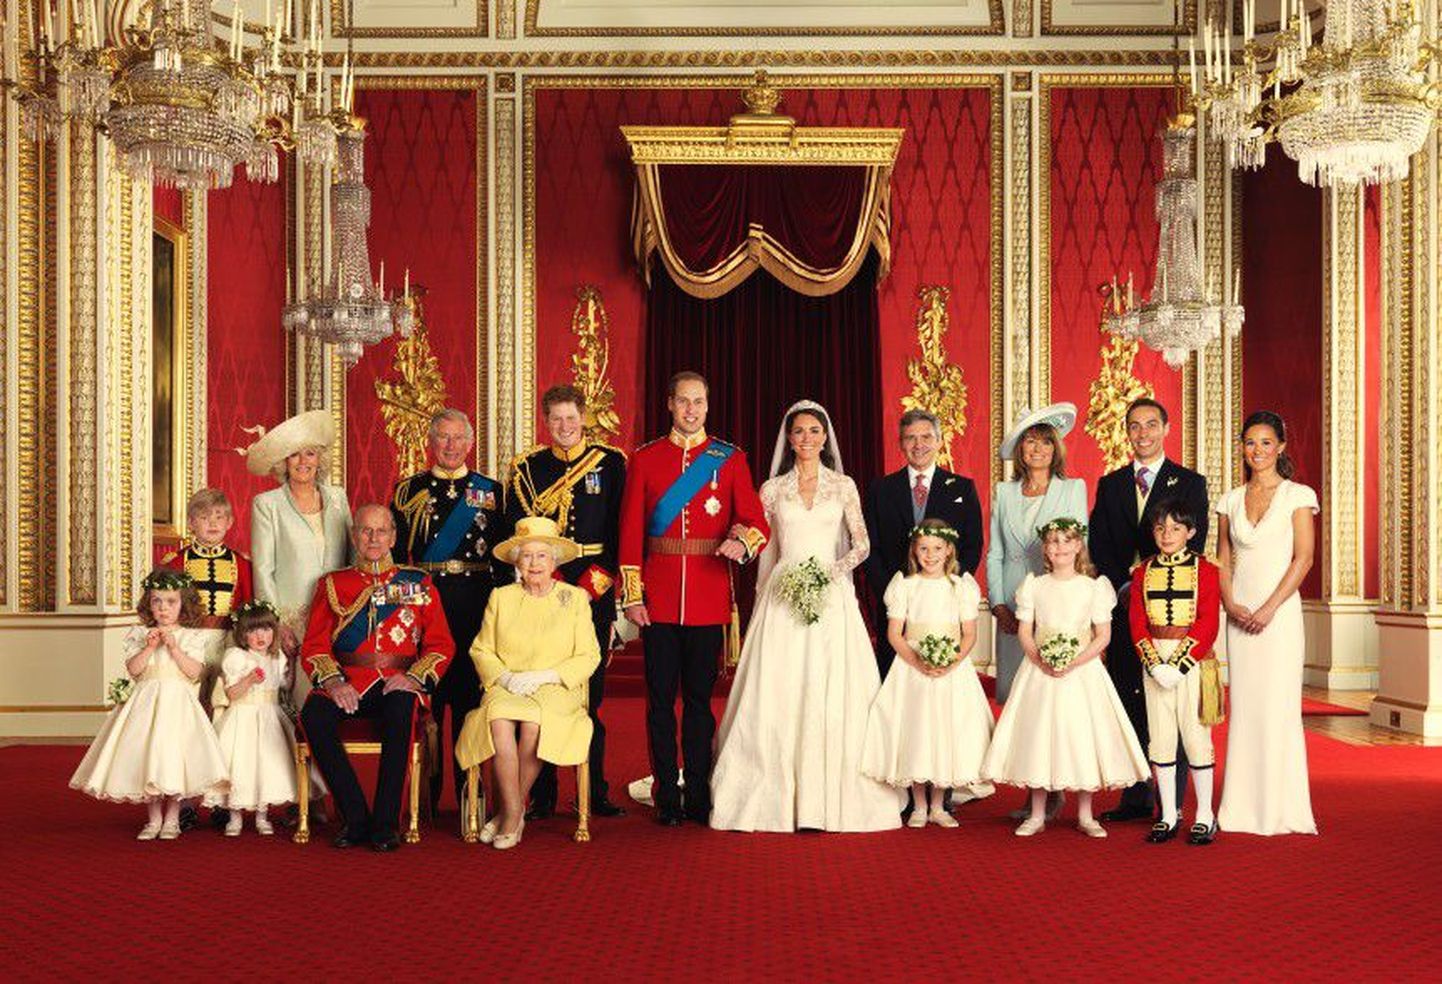 Принц Уильям и принцесса Кэтрин со    своими родными: (сидят) принц Филипп и королева Великобритании Елизавета II, (слева от принца Уильяма) Камилла, герцогиня Корнуэльская, и принц Чарльз, принц Гарри, (справа от принцессы Кэтрин)   родители Кэтрин — Майкл Миддлтон и Кэрол Миддлтон, брат Джеймс Миддлтон и сестра Филиппа Миддлтон, а также юные пажи и подружки невесты.